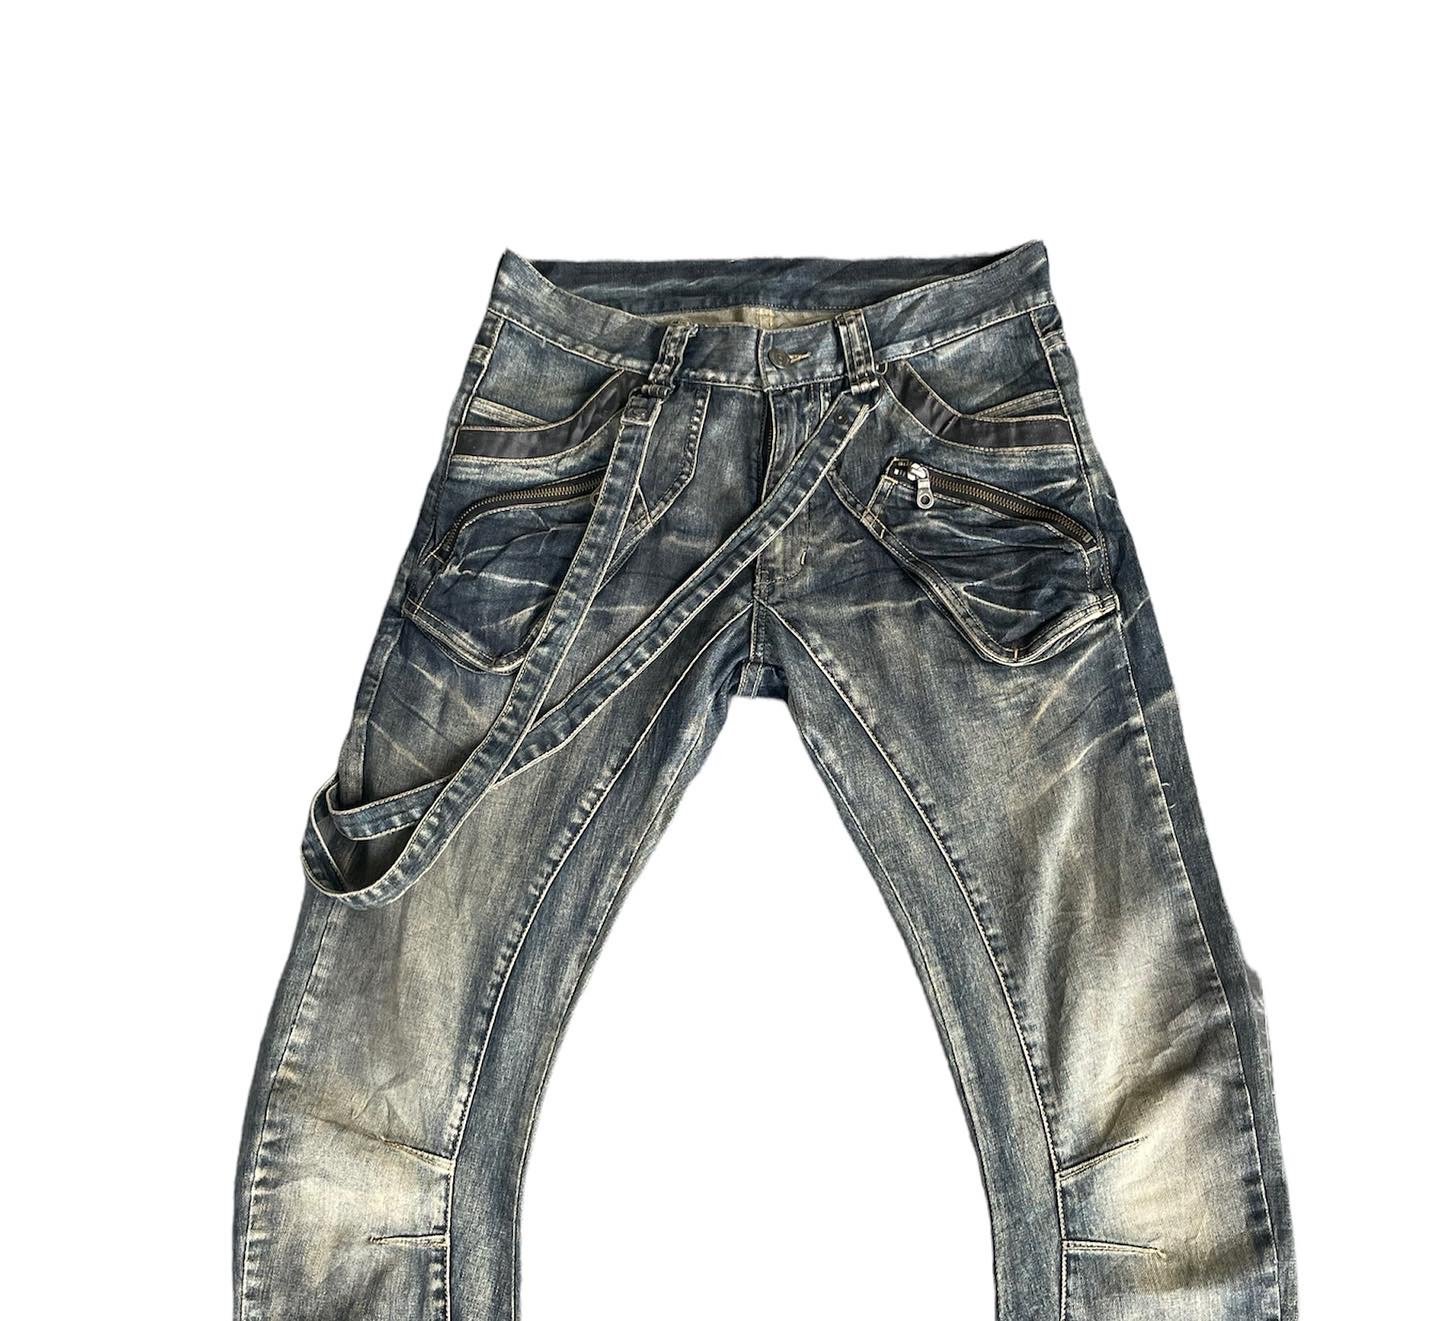 再入荷 vintage gimmick ppfm - zip - gimmick pants design vintage ...